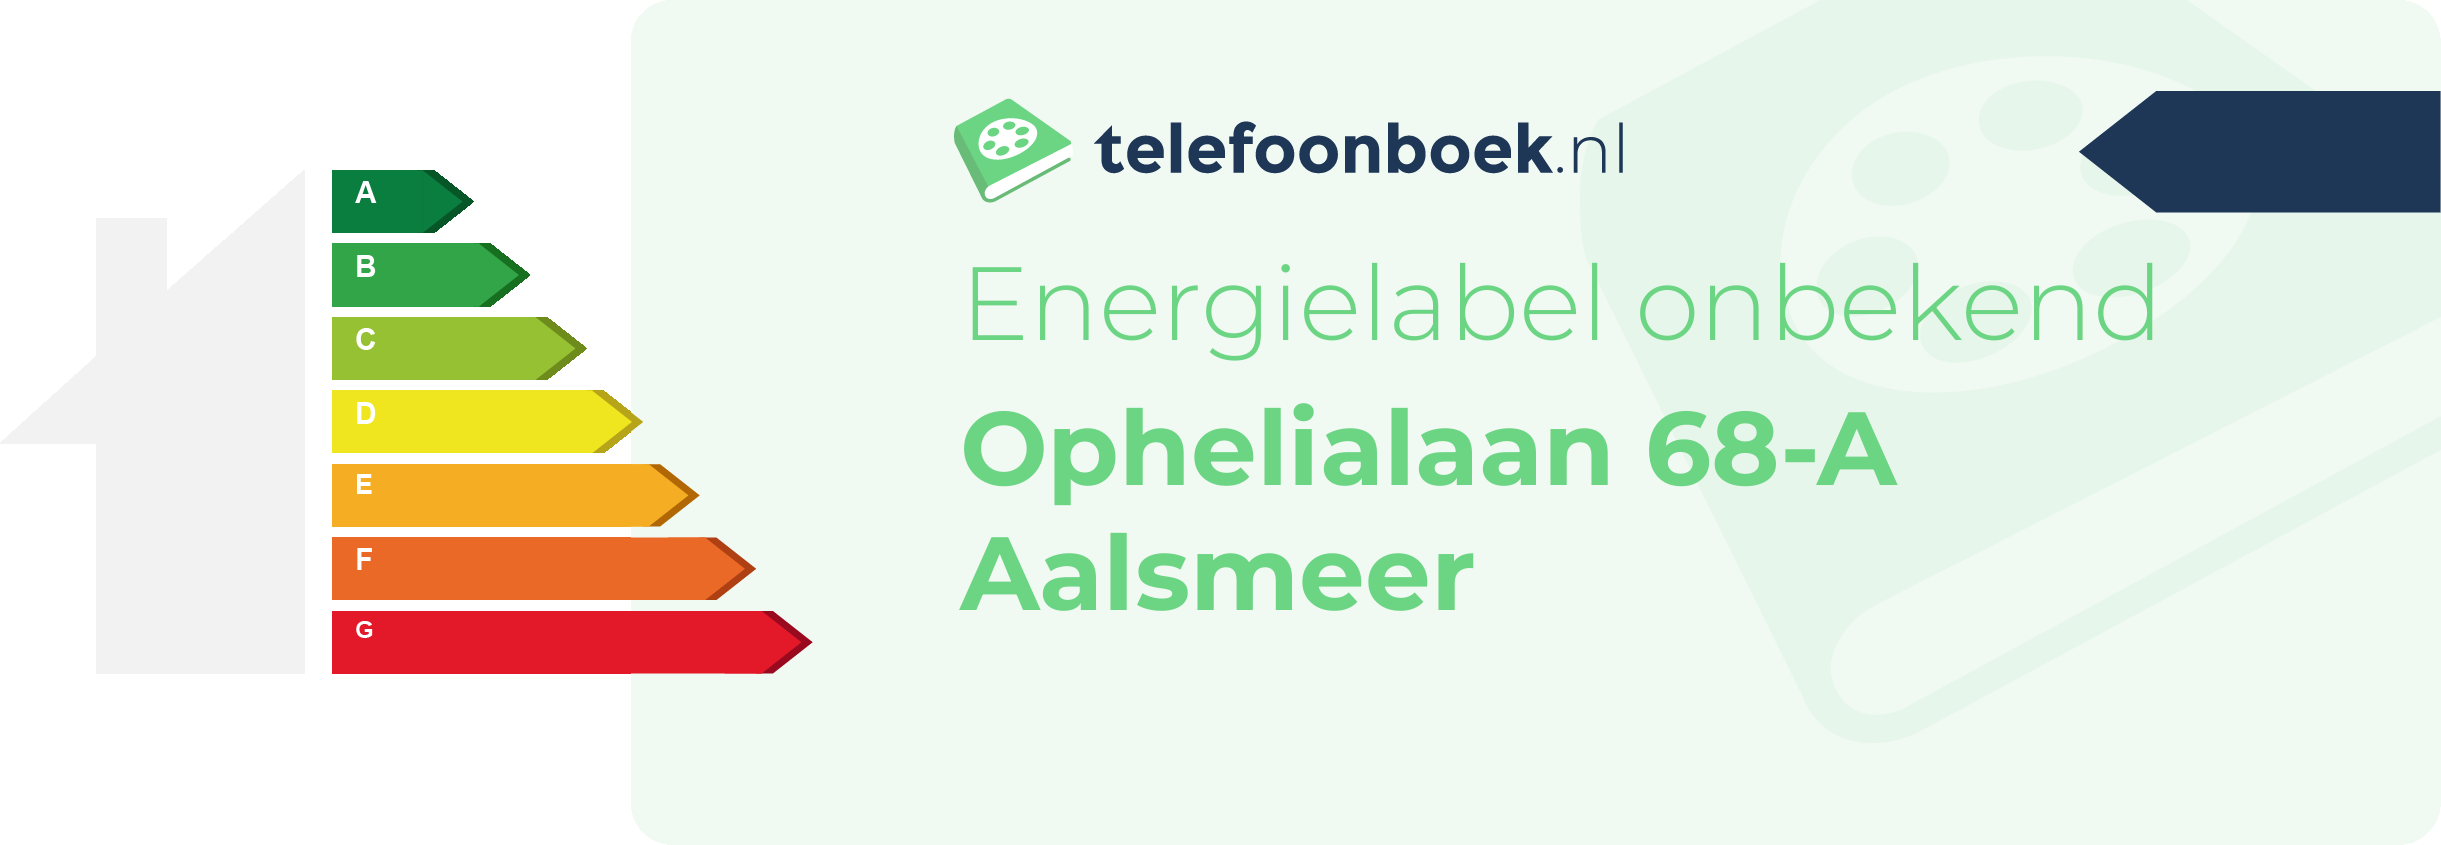 Energielabel Ophelialaan 68-A Aalsmeer